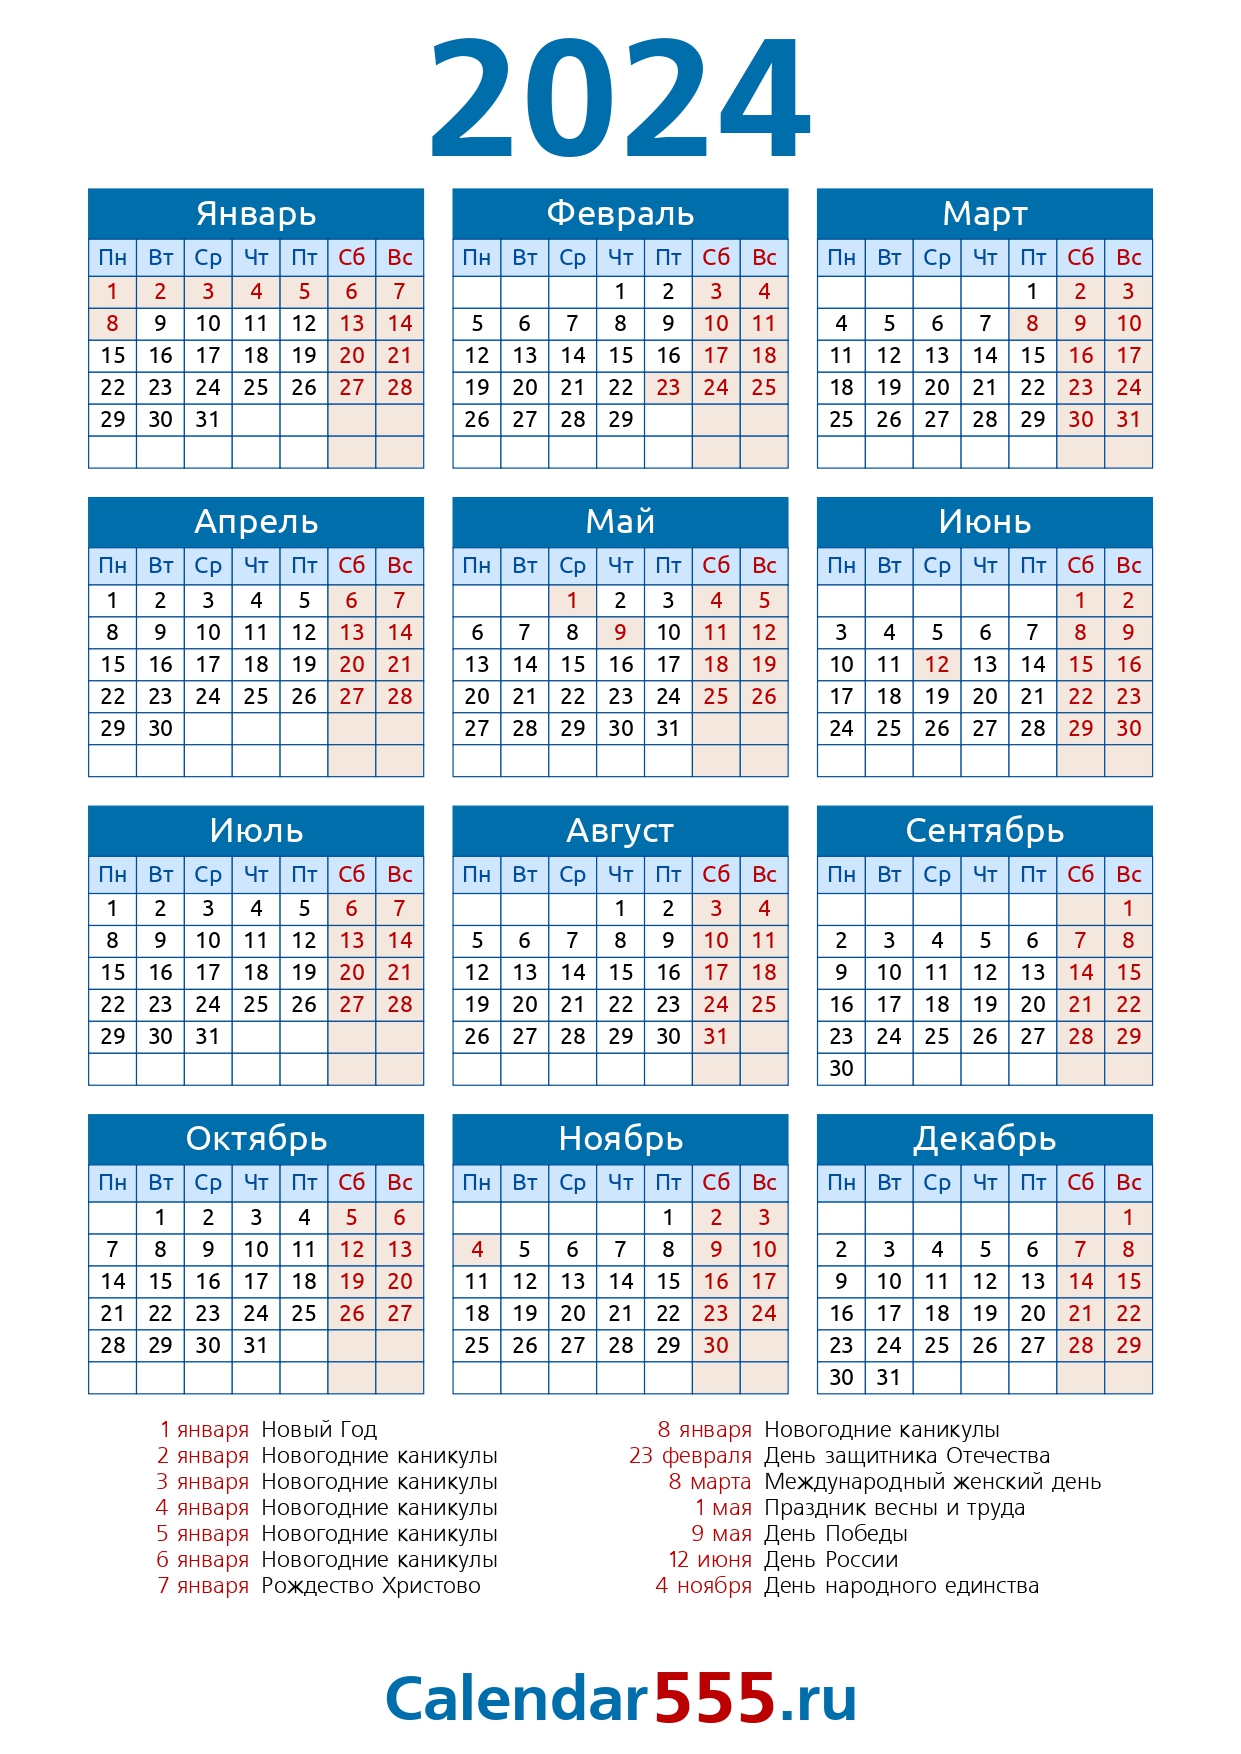 Календарь выходных 2023 башкортостан. Производственный 2023 календарь с праздниками на 2023. Производственный календарь на 2023 год. Производство календарь на 2023. Календарь на 2023 год с праздниками.